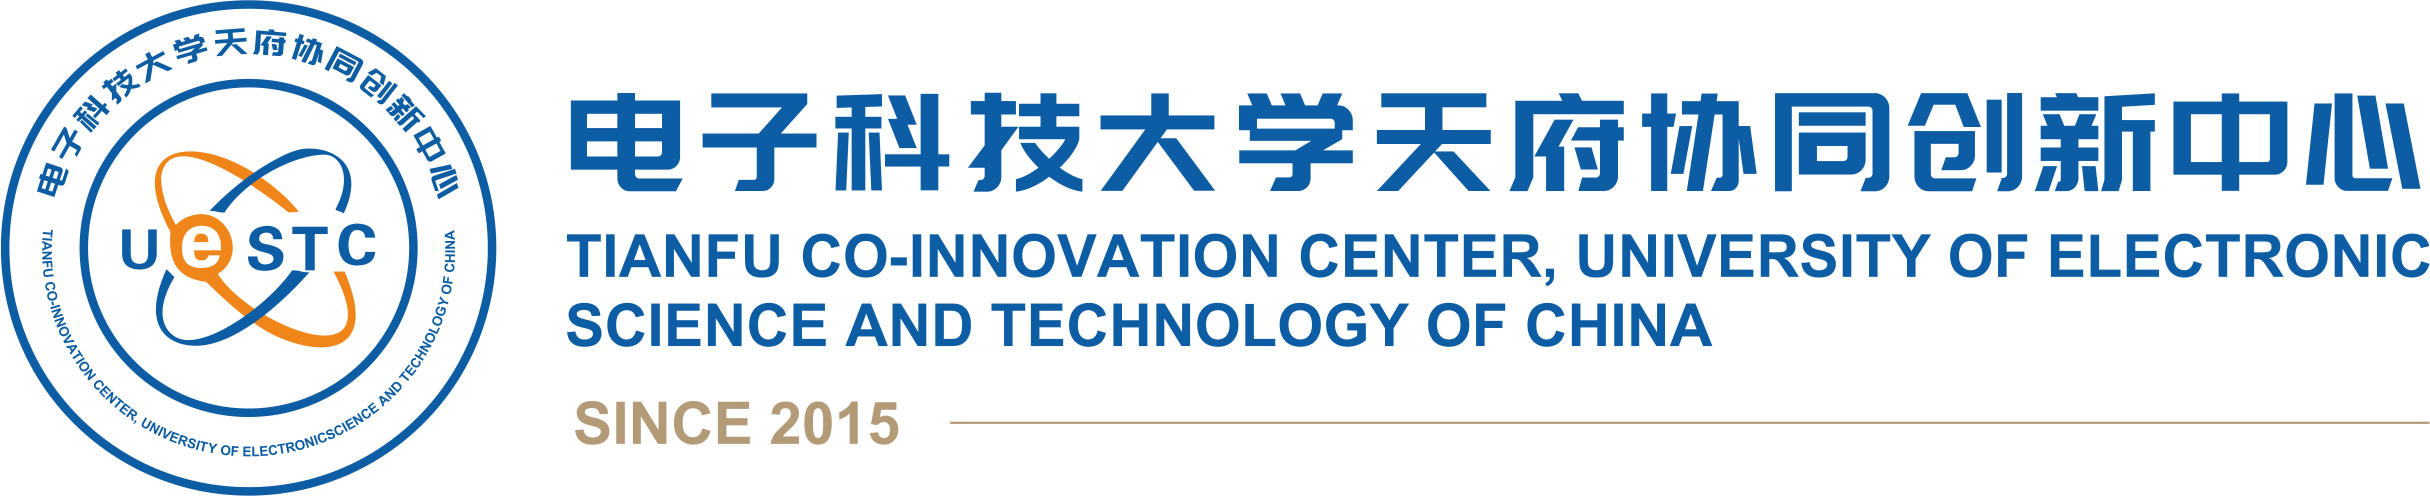 电子科技大学天府协同创新中心